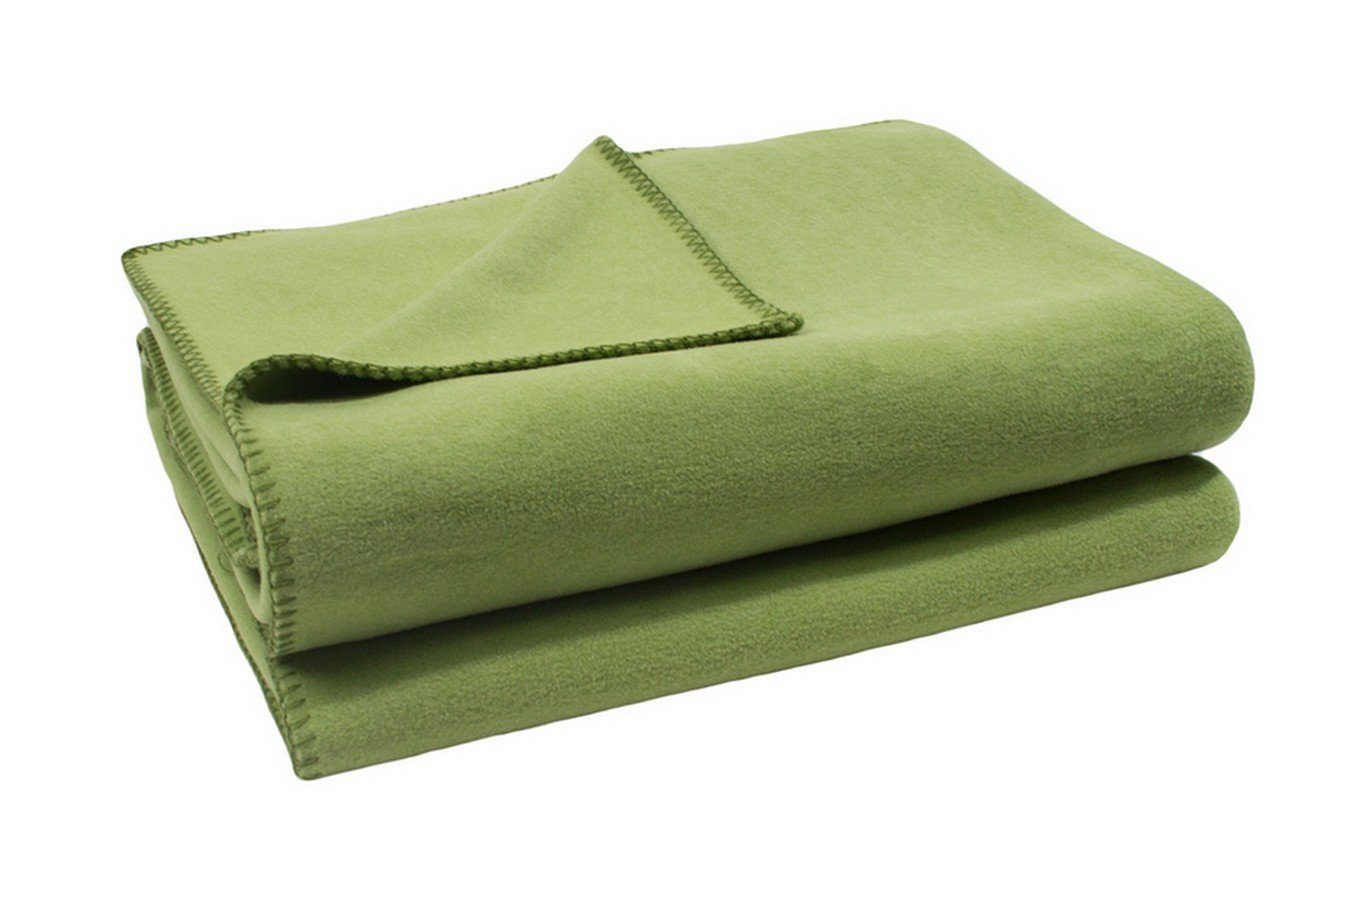 Großhandelspreis von Wohndecke Soft-Fleece Decke 160 x living cm daslagerhaus grün, 200